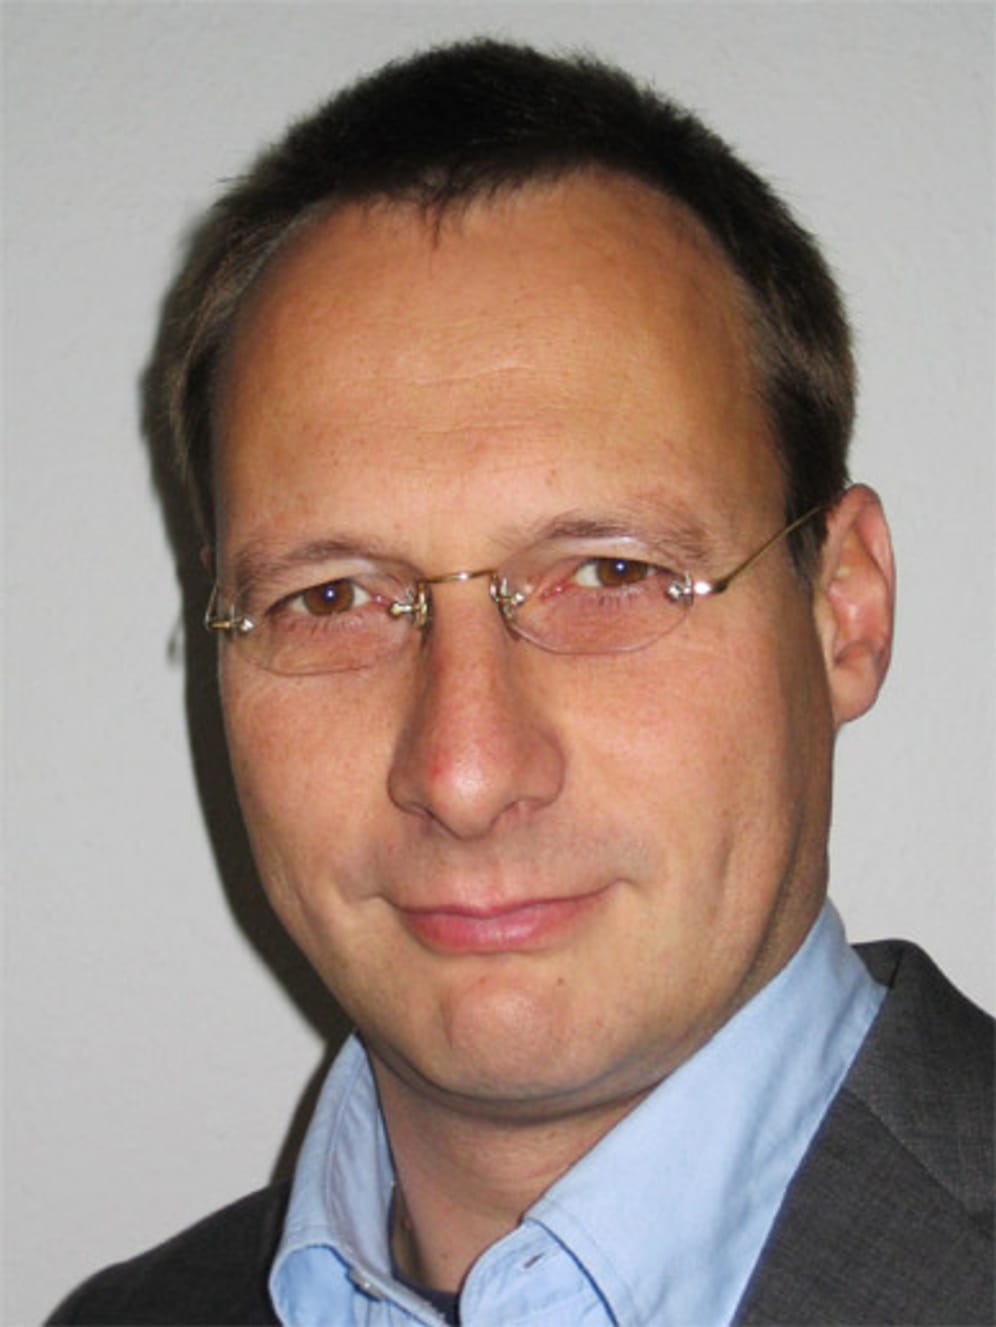 Kommunikationswissenschaftler Professor Michael Schaffrath von der TU München.